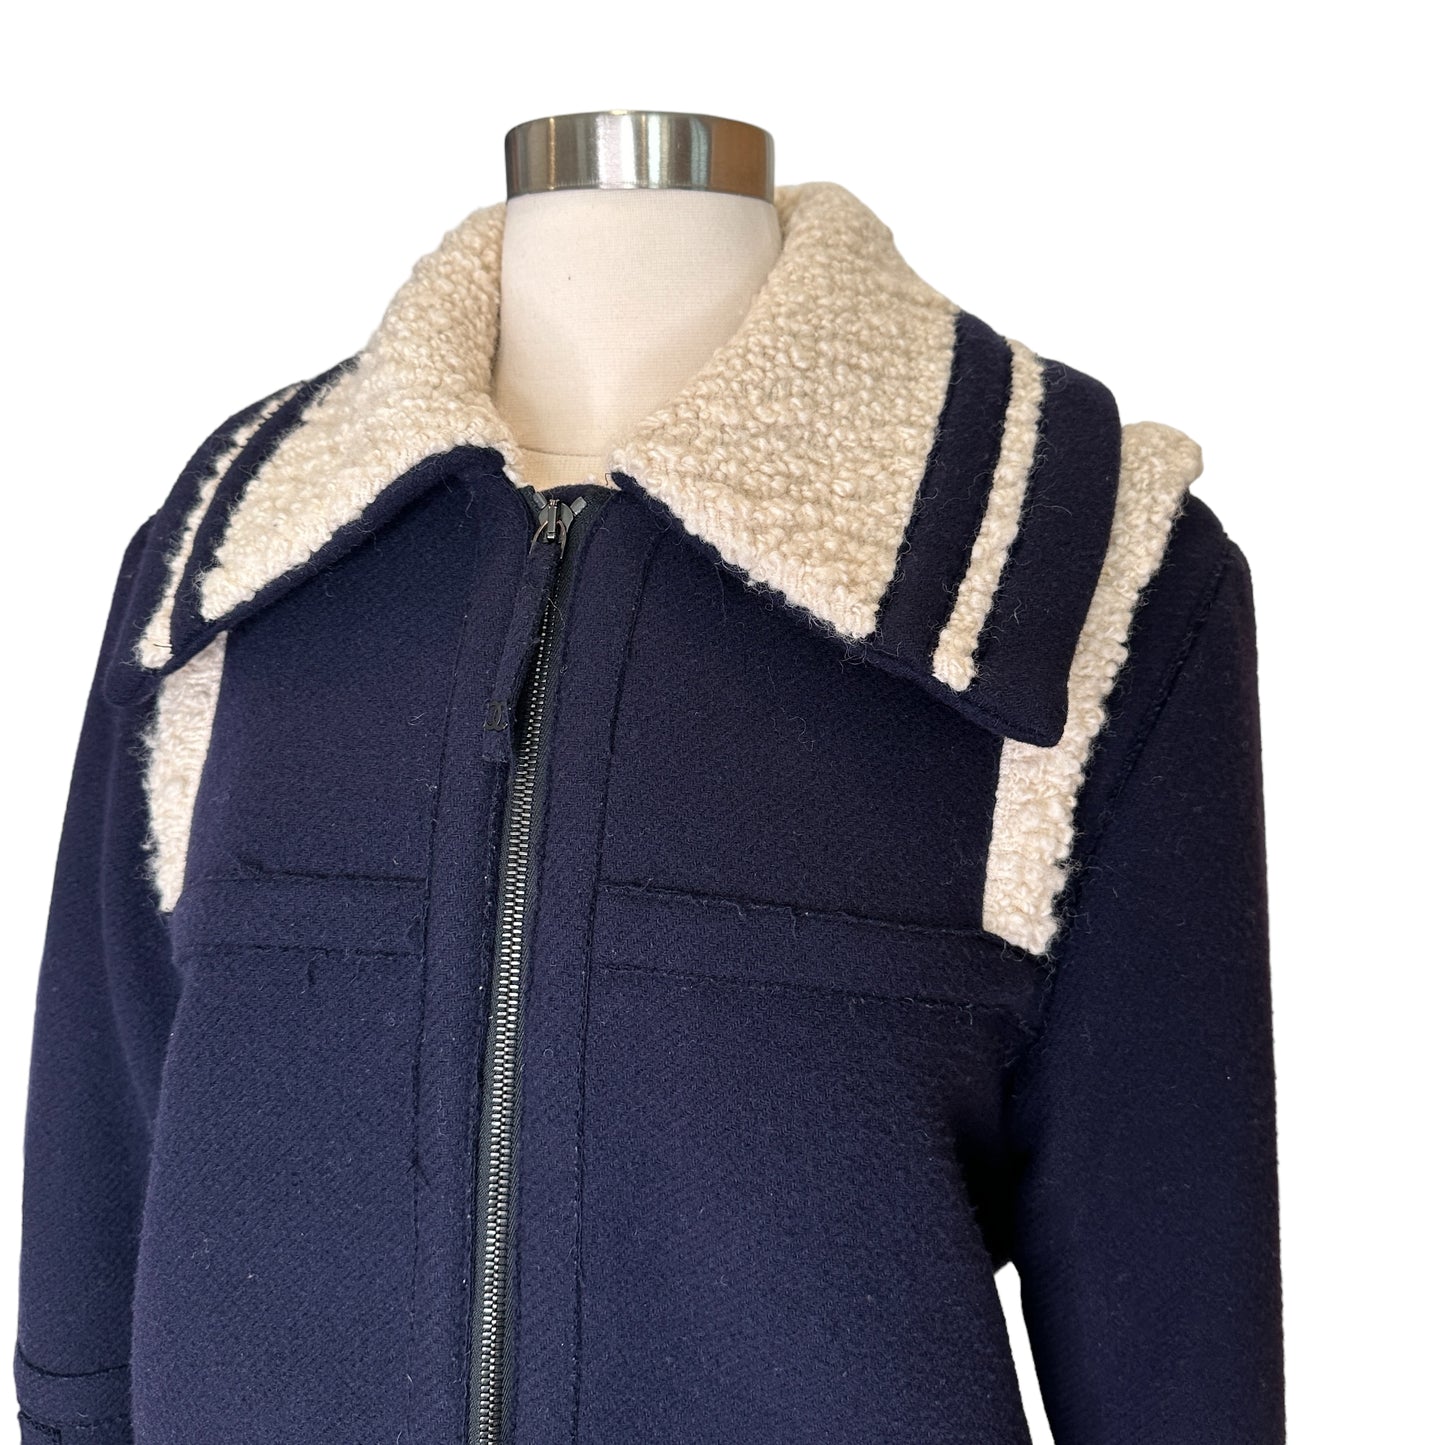 Navy & Cream Wool Coat - S